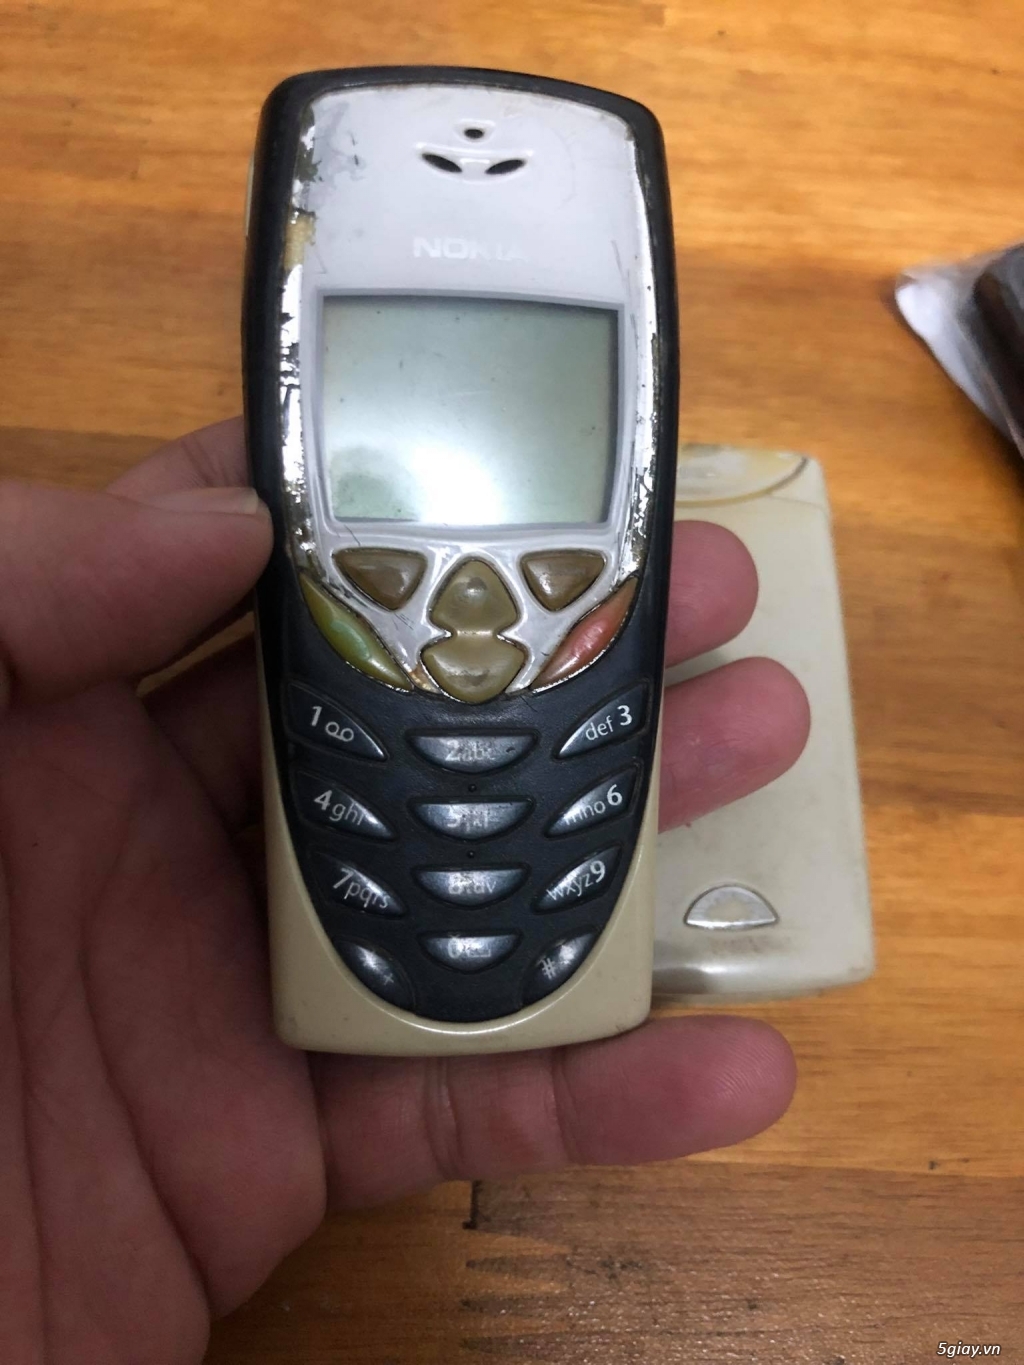 Bán BB 9650 - Nokia E72/C3-01/2700/1208 , mtb cùng ít xác điện thoại. - 6